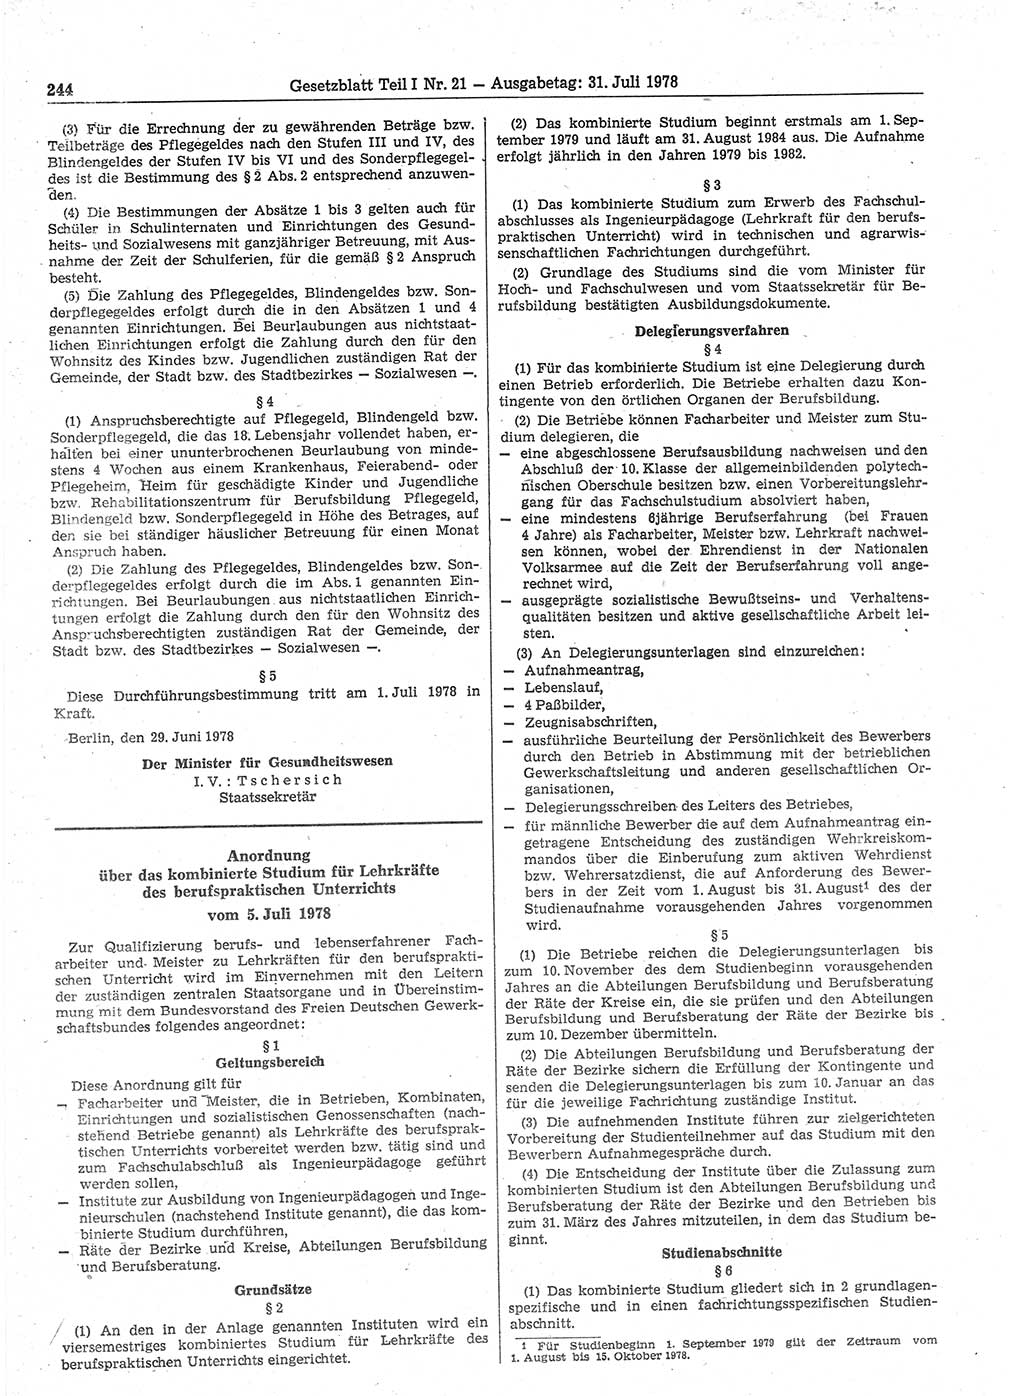 Gesetzblatt (GBl.) der Deutschen Demokratischen Republik (DDR) Teil Ⅰ 1978, Seite 244 (GBl. DDR Ⅰ 1978, S. 244)